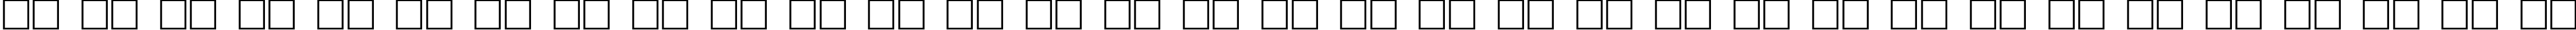 Пример написания русского алфавита шрифтом Toon Plain